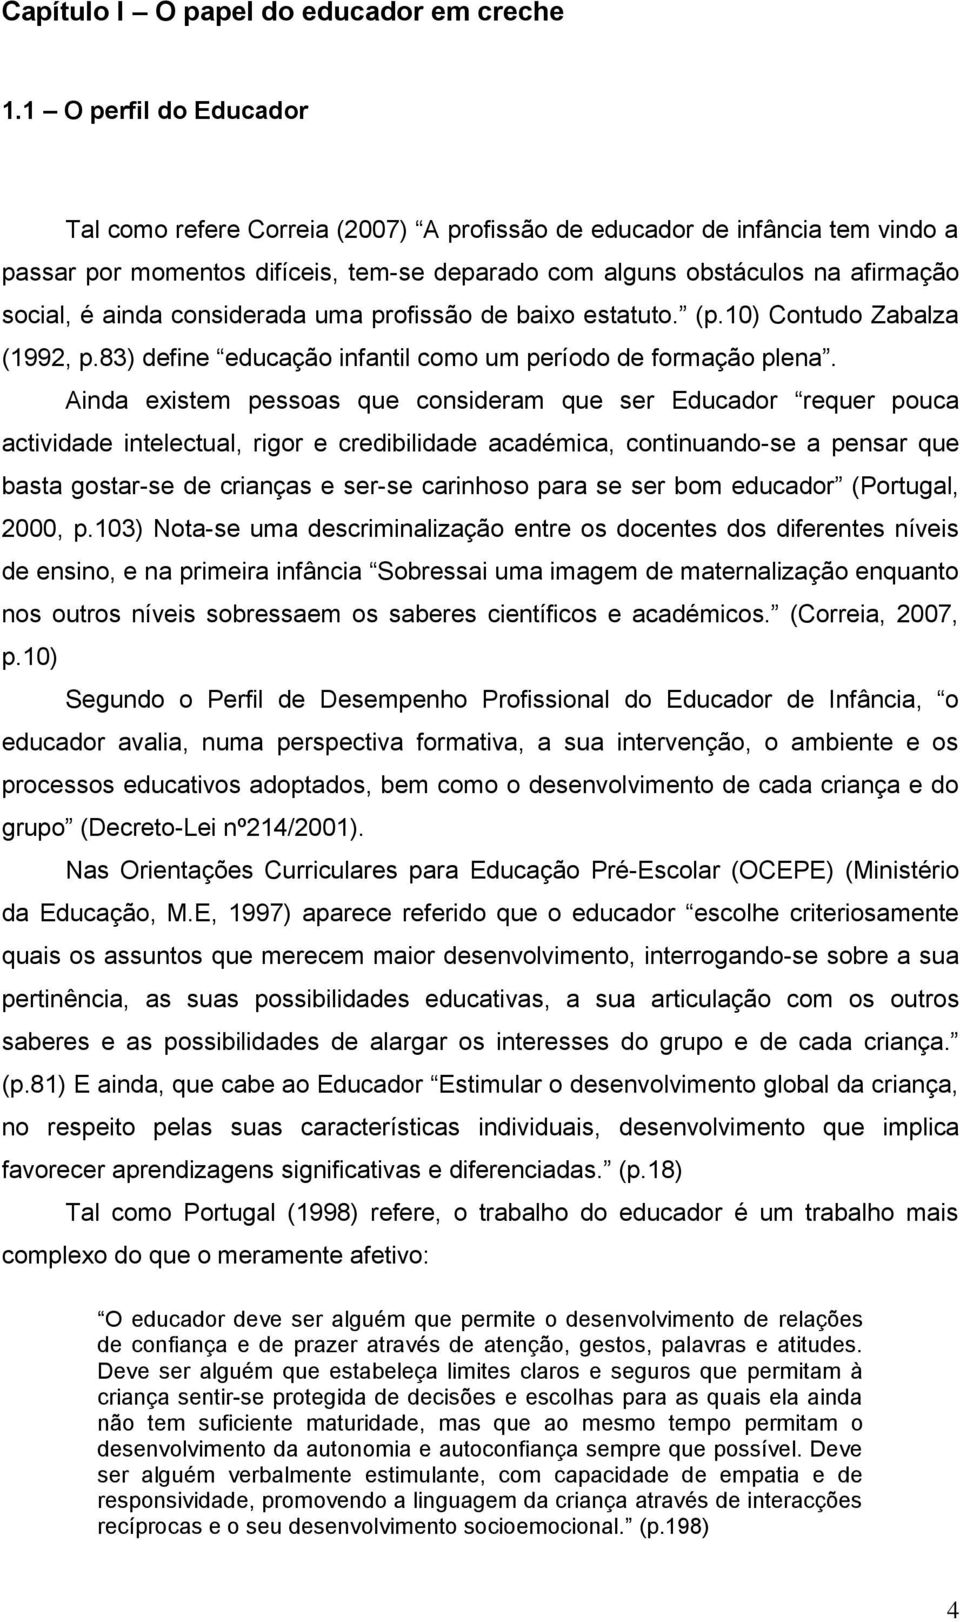 considerada uma profissão de baixo estatuto. (p.10) Contudo Zabalza (1992, p.83) define educação infantil como um período de formação plena.